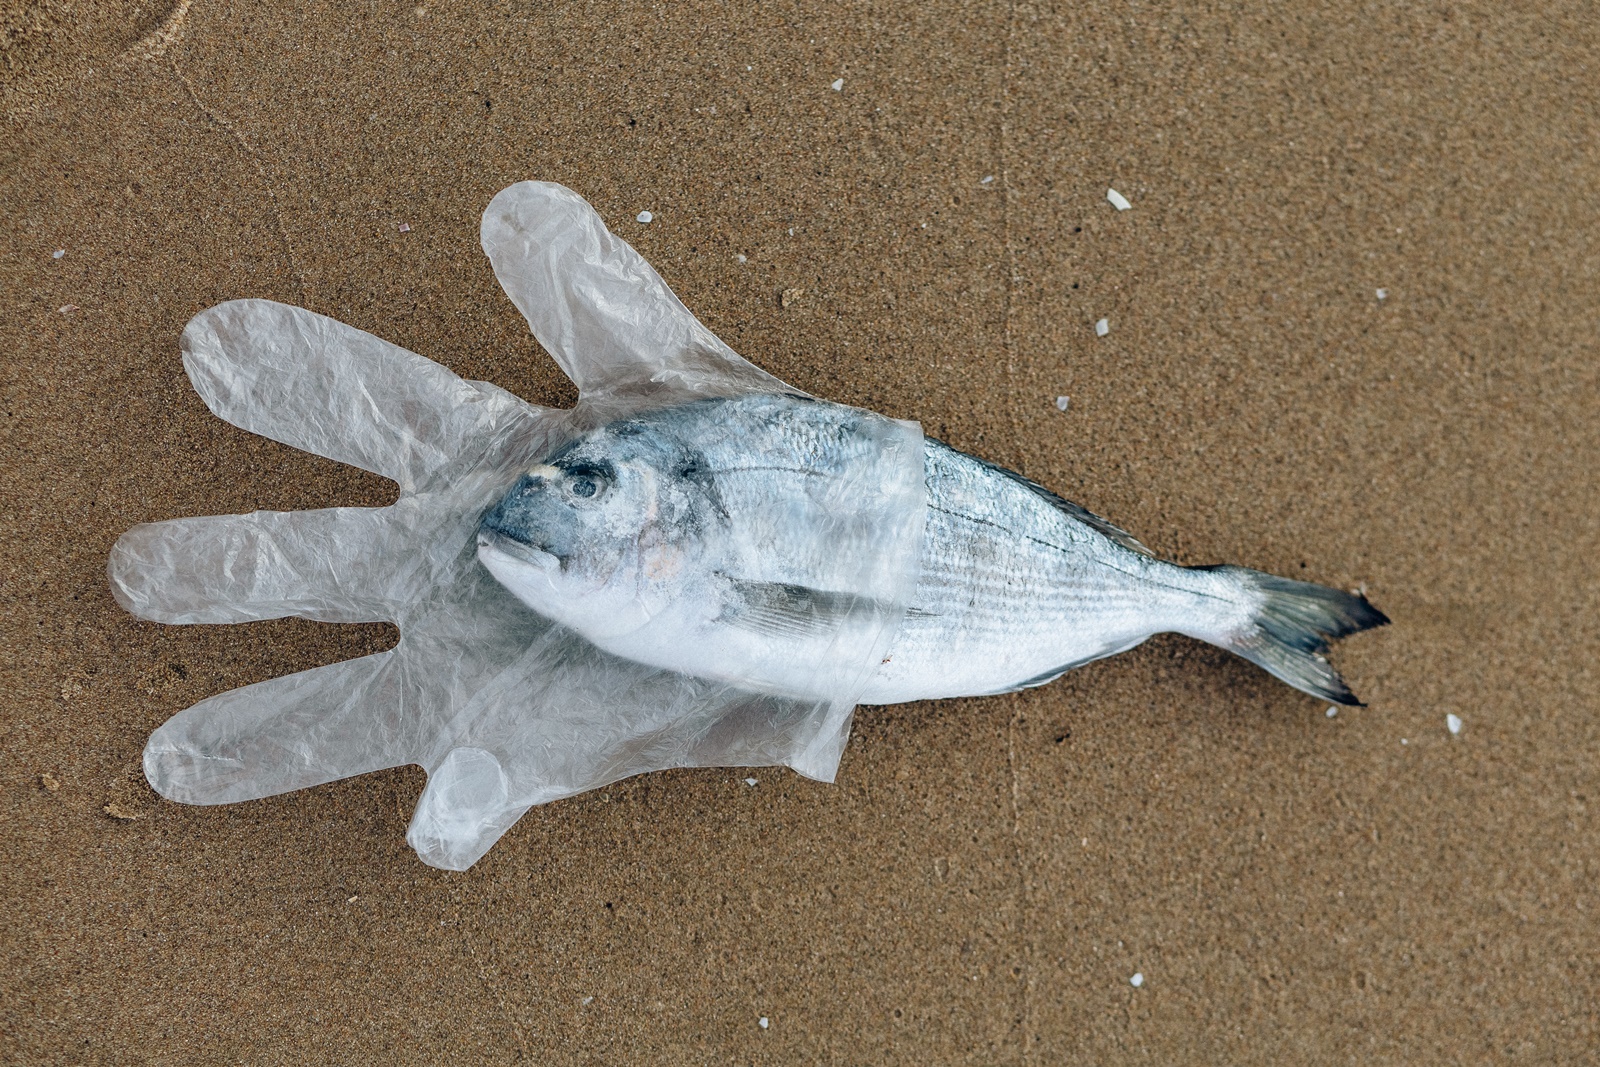 Ρομποτικό ψάρι: Νέα πρωτοπορία – Έτσι θα φύγουν τα μικροπλαστικά από τις θάλασσες